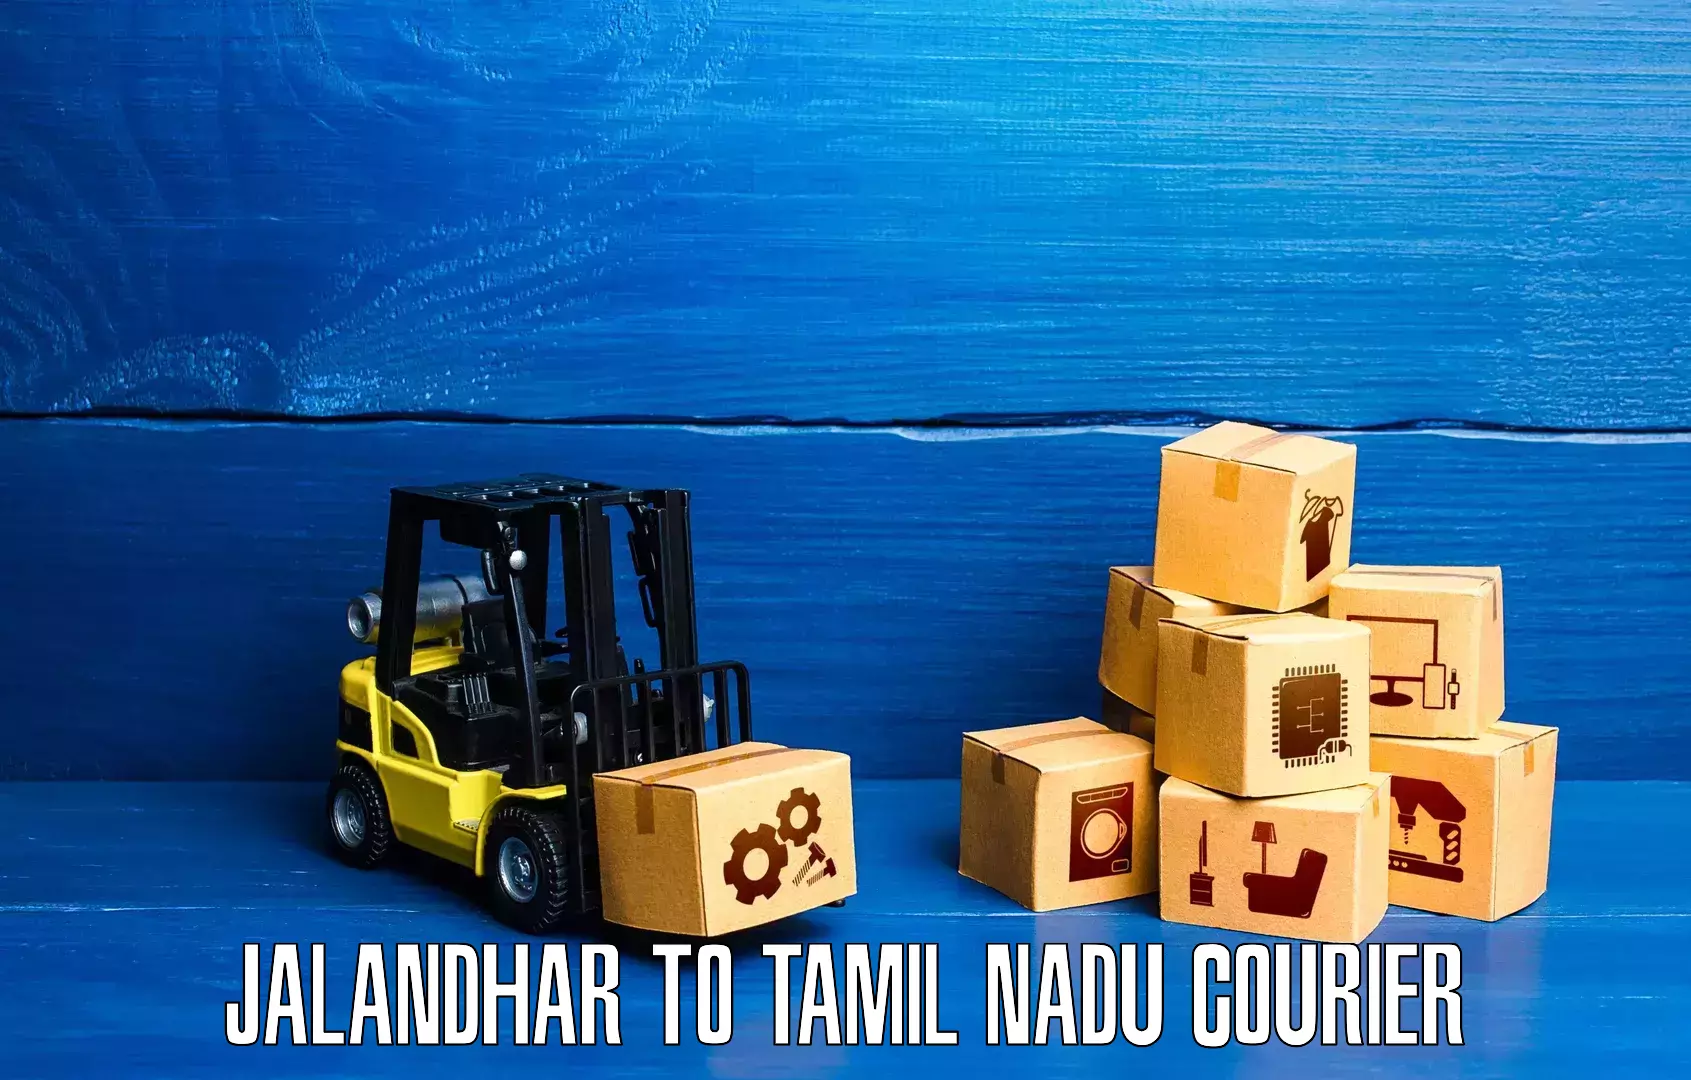 Modern courier technology Jalandhar to Tamil Nadu